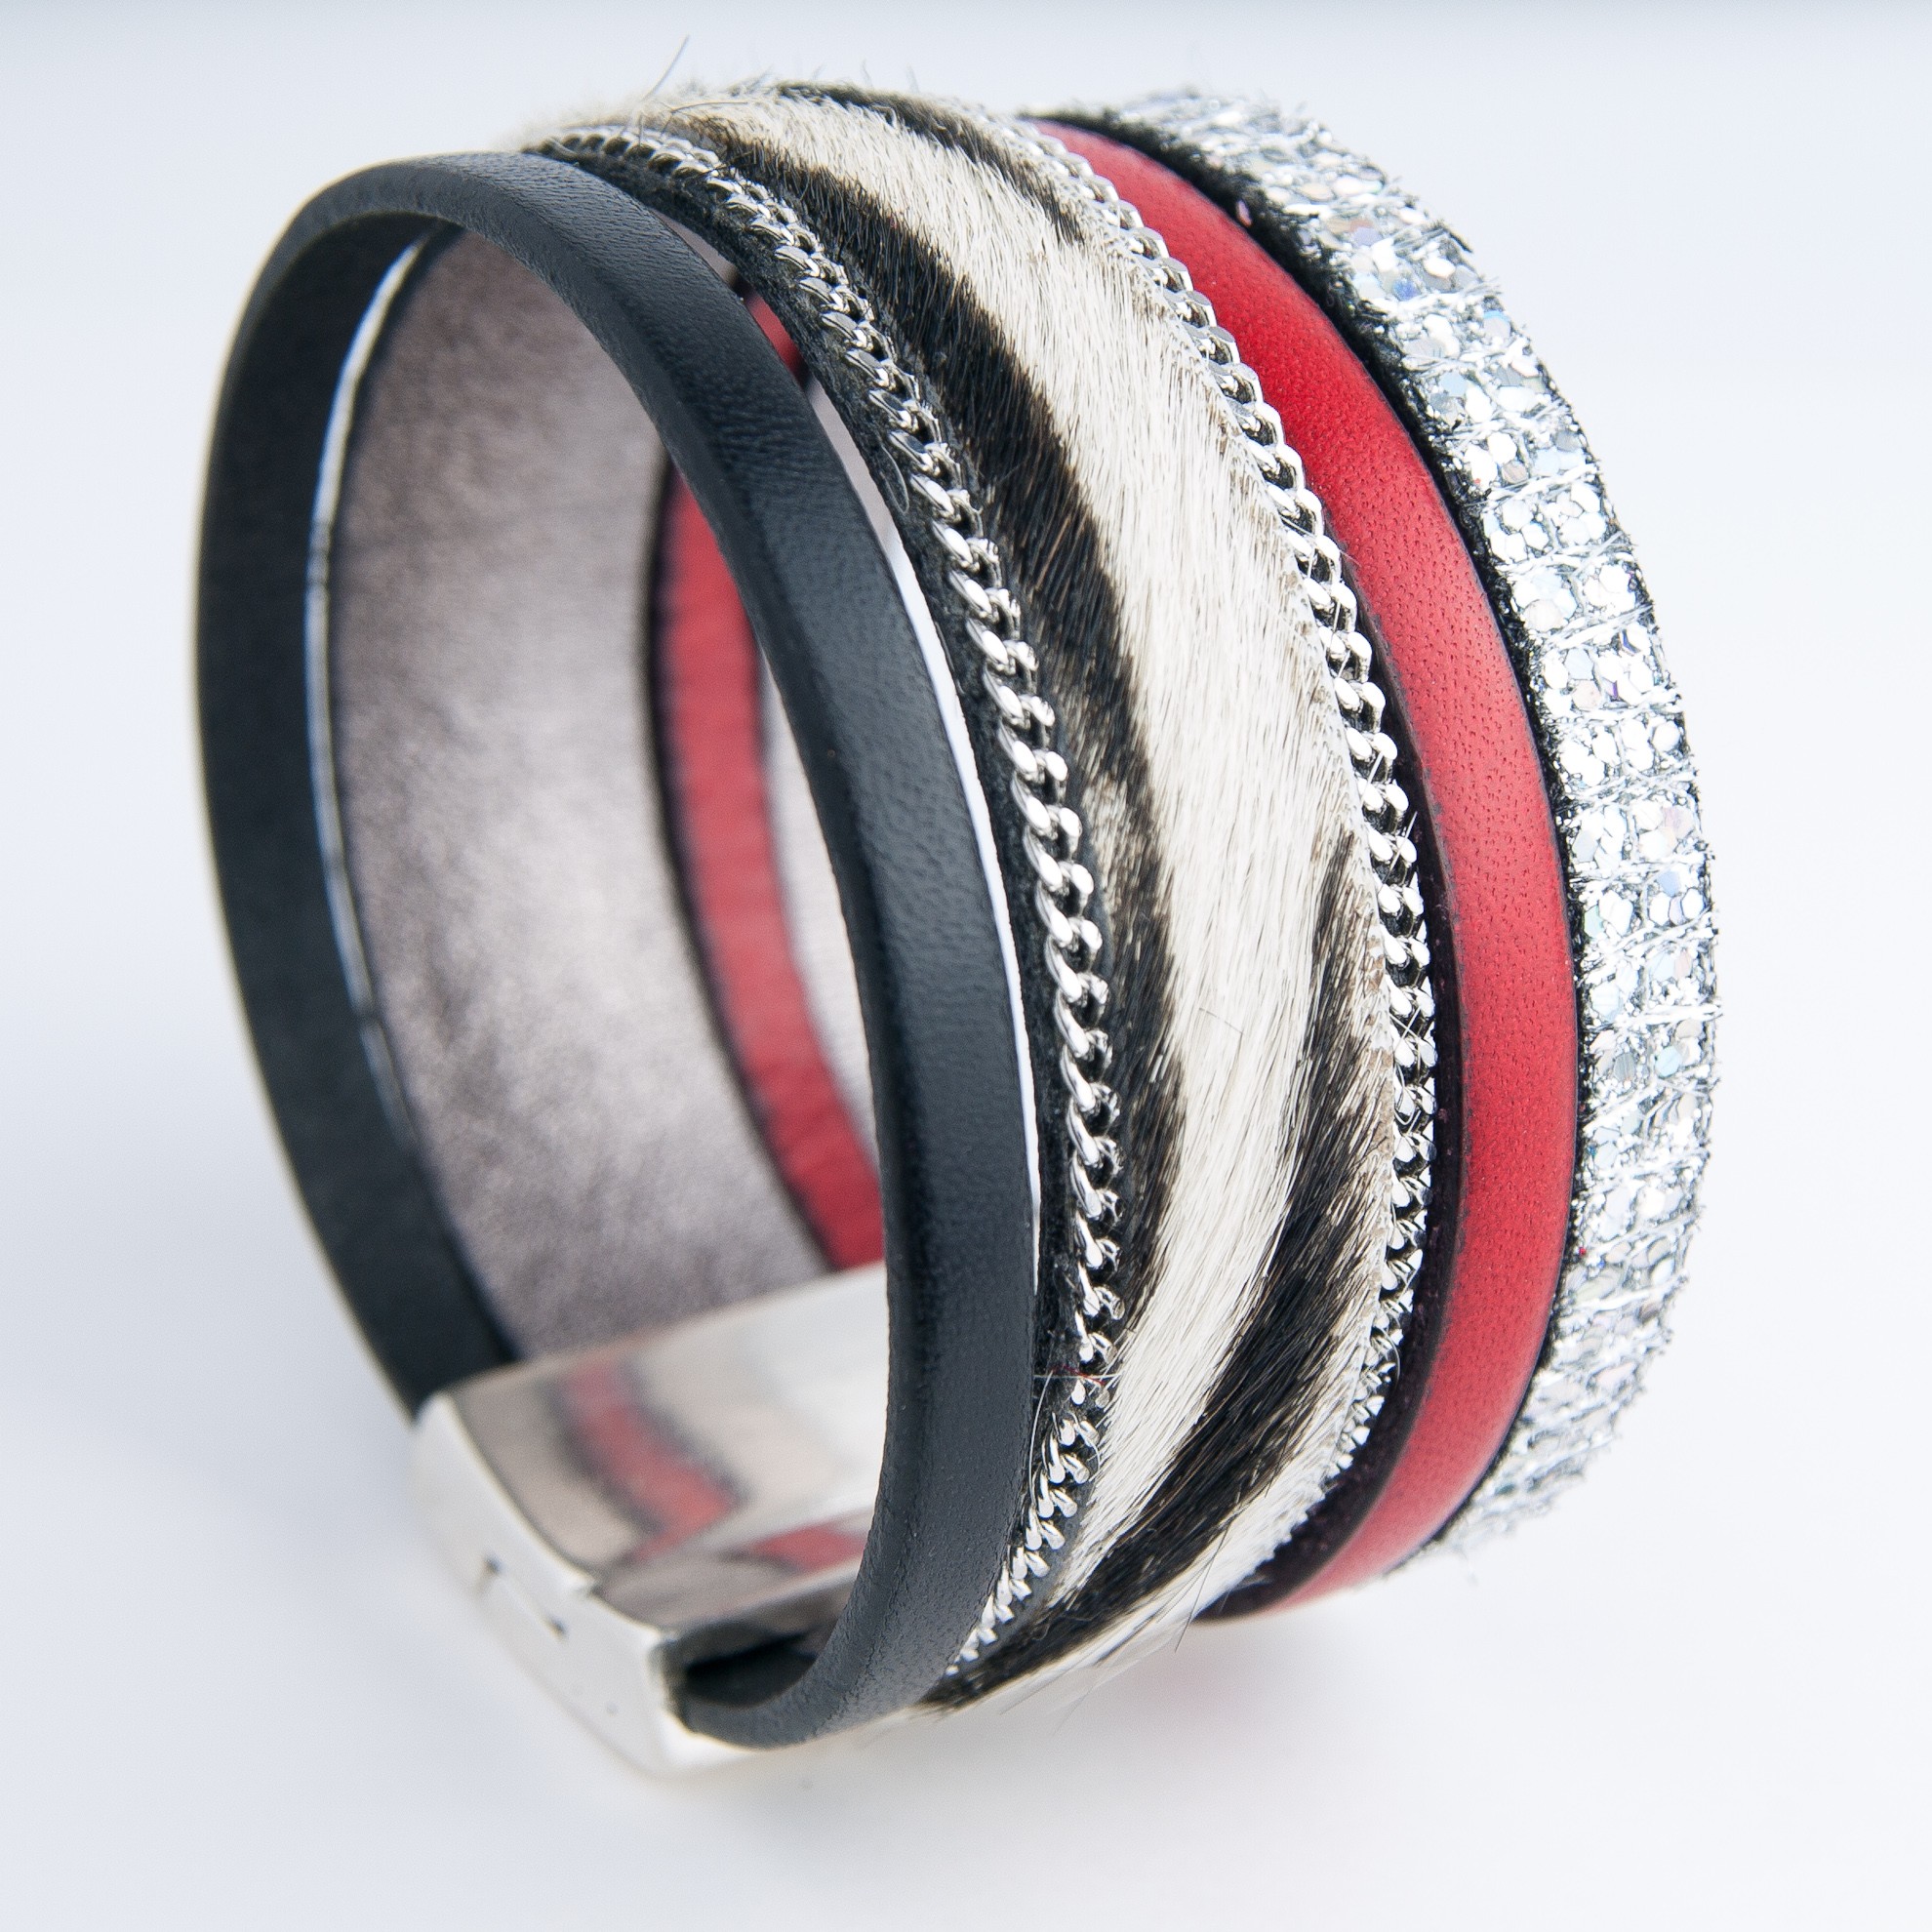 Bracelet cuir cordons rouge et tubes argentés - Anne-louise Colrat